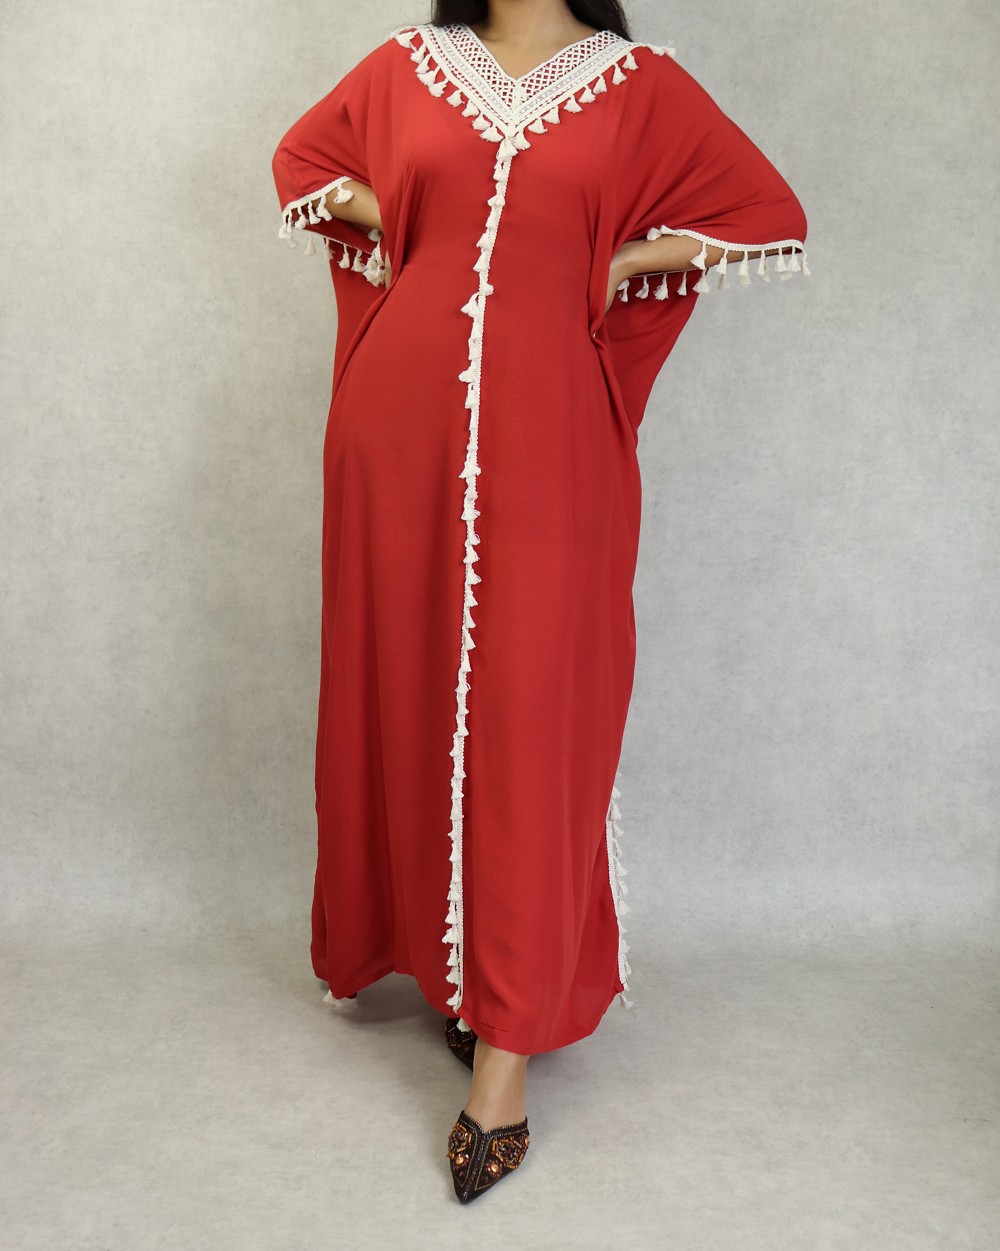 Robe papillon style oriental pour la maison et l'été (Robes extra-large et  grande taille pour femme) - Couleur Rouille - Prêt à porter et accessoires  sur